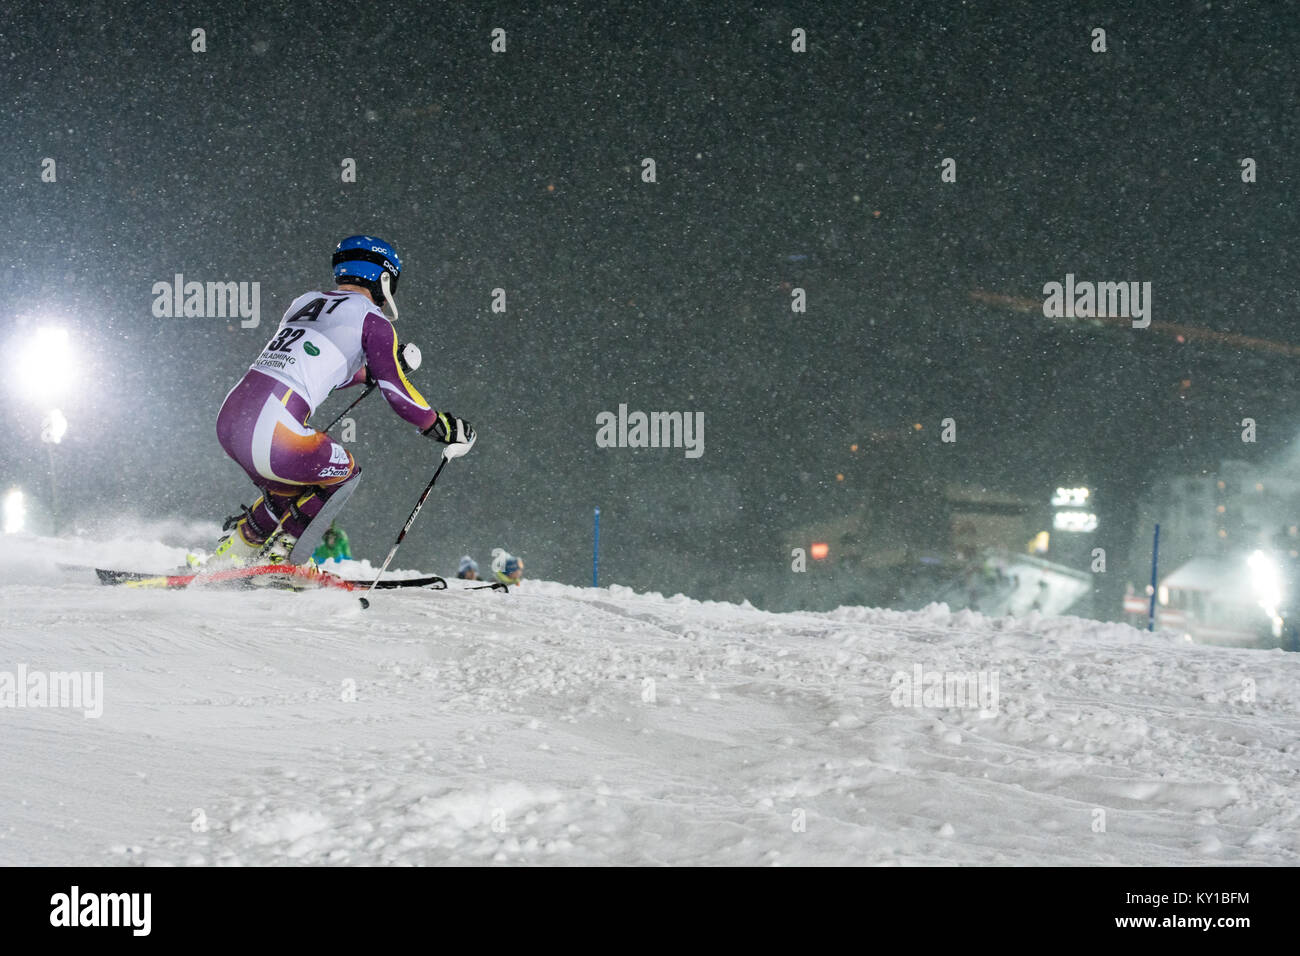 Die norwegische Wm Ski alpin Racer Jonathan Nordbottton (32) stellt Schritt während der erste Lauf der Männer Slalom am AUDI FIS Weltcup Rennen in Schladming. Photo Credit: Christoph Oberschneider. Stockfoto